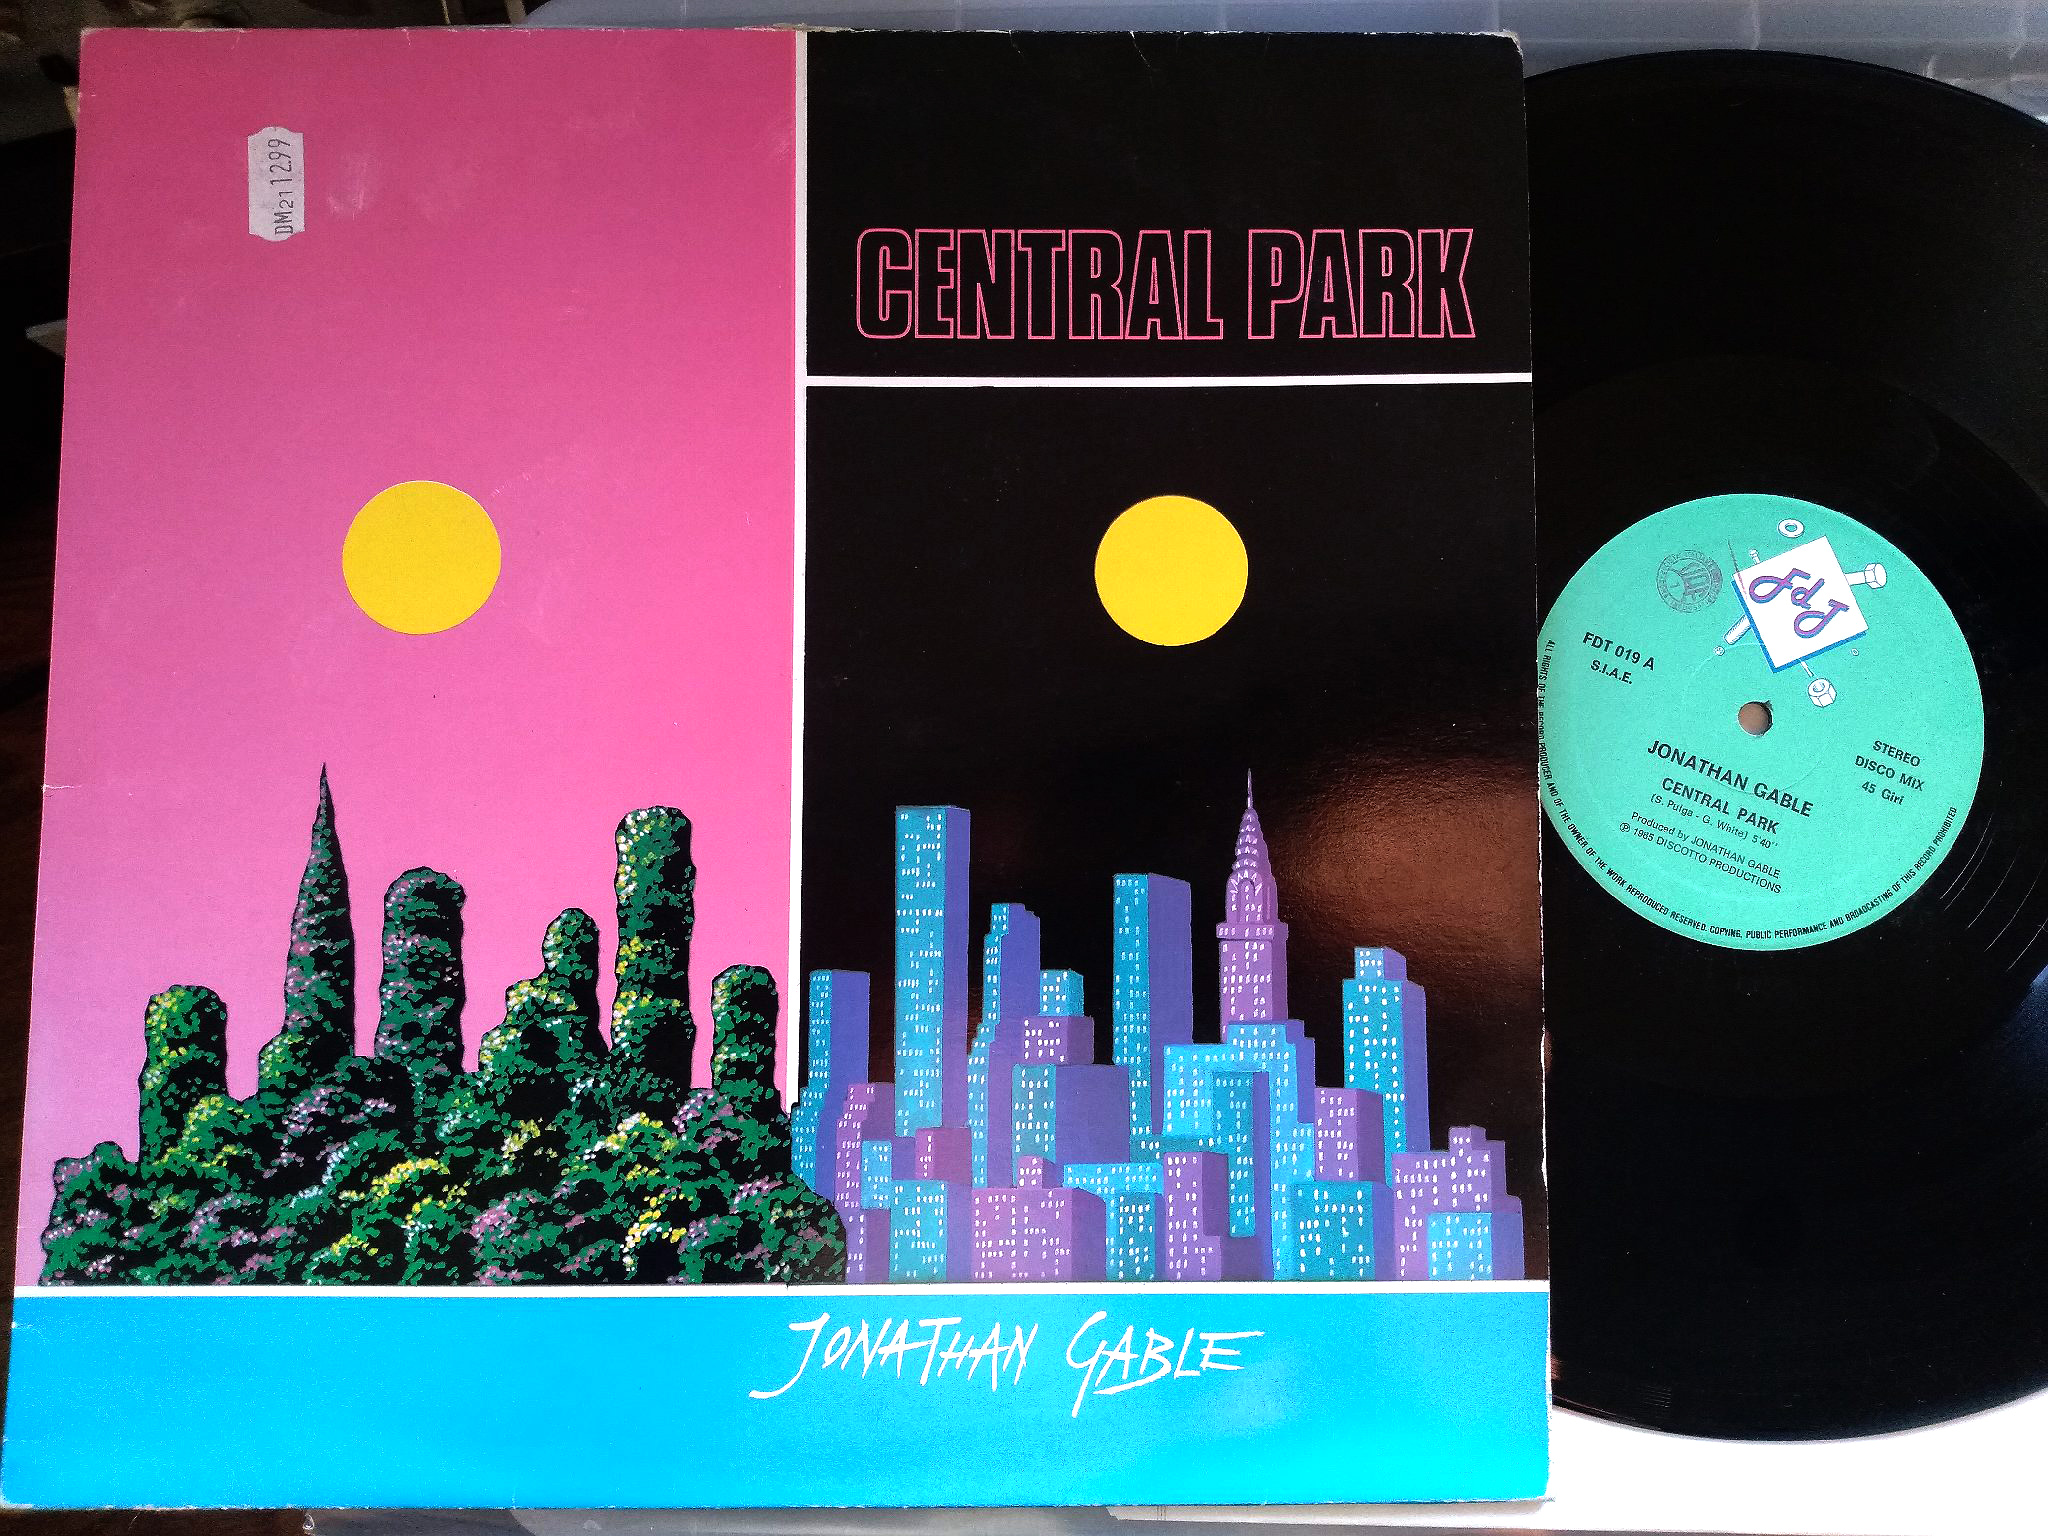 Jonathan Gable - Central Park